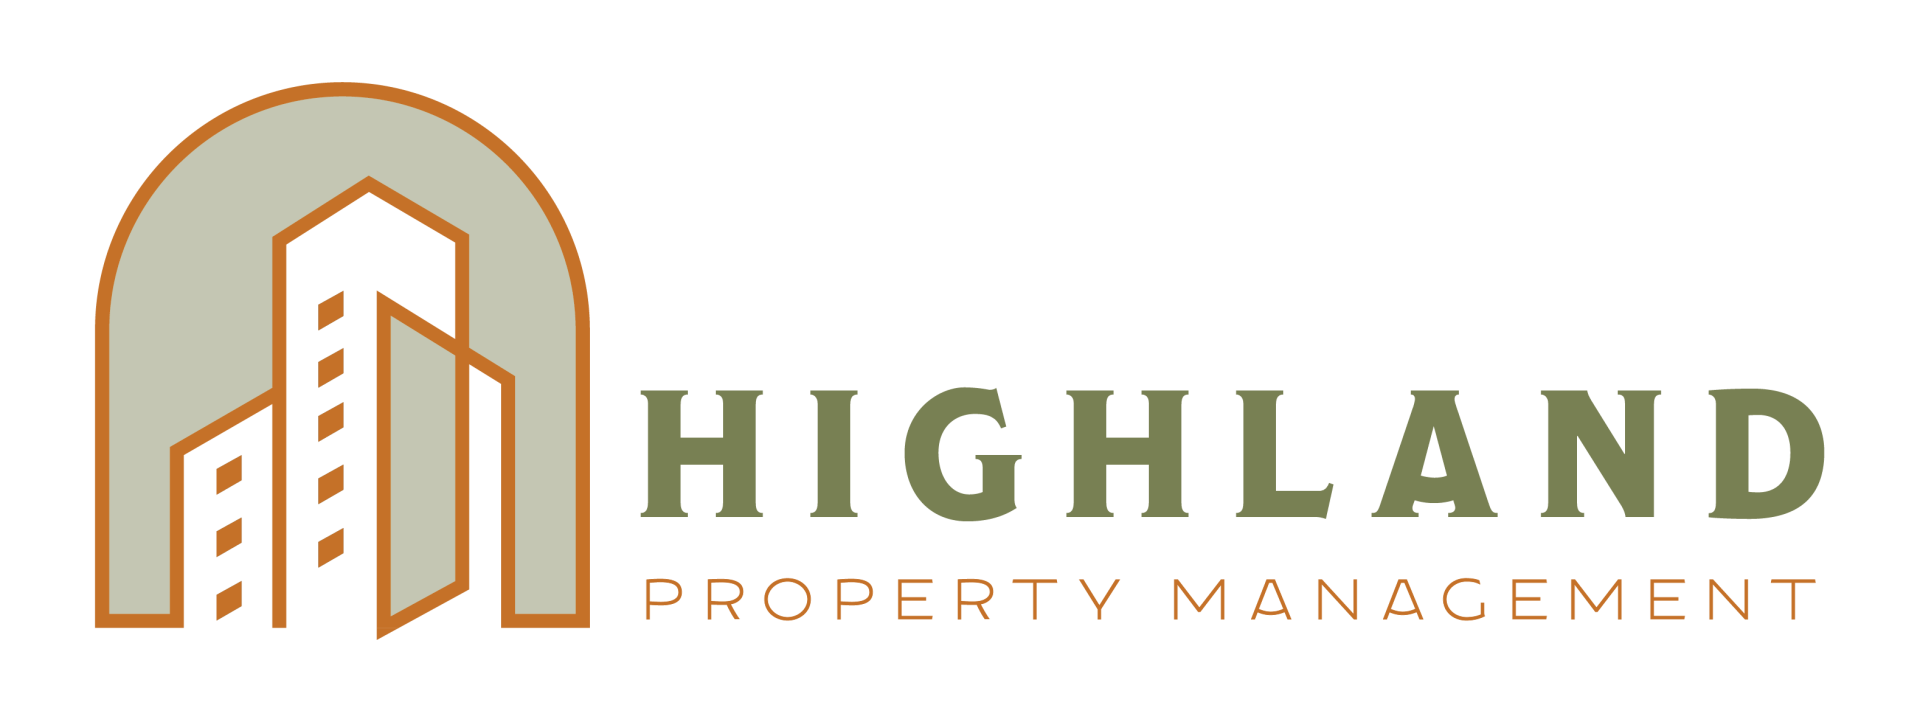 Highland property management logo